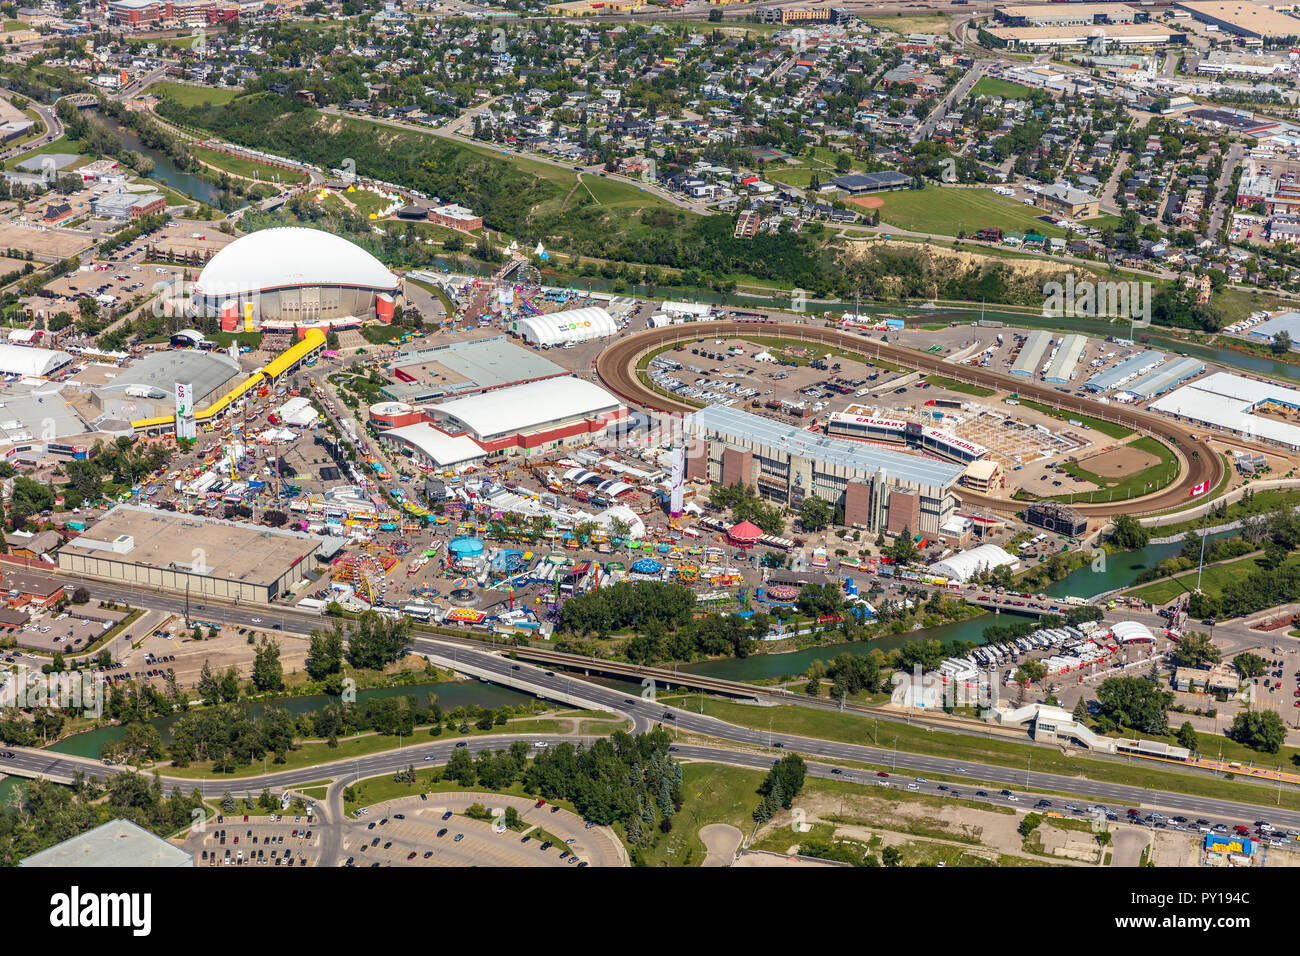 aerial view of Calgary Stampede venue during Stampede week. Stock Photo